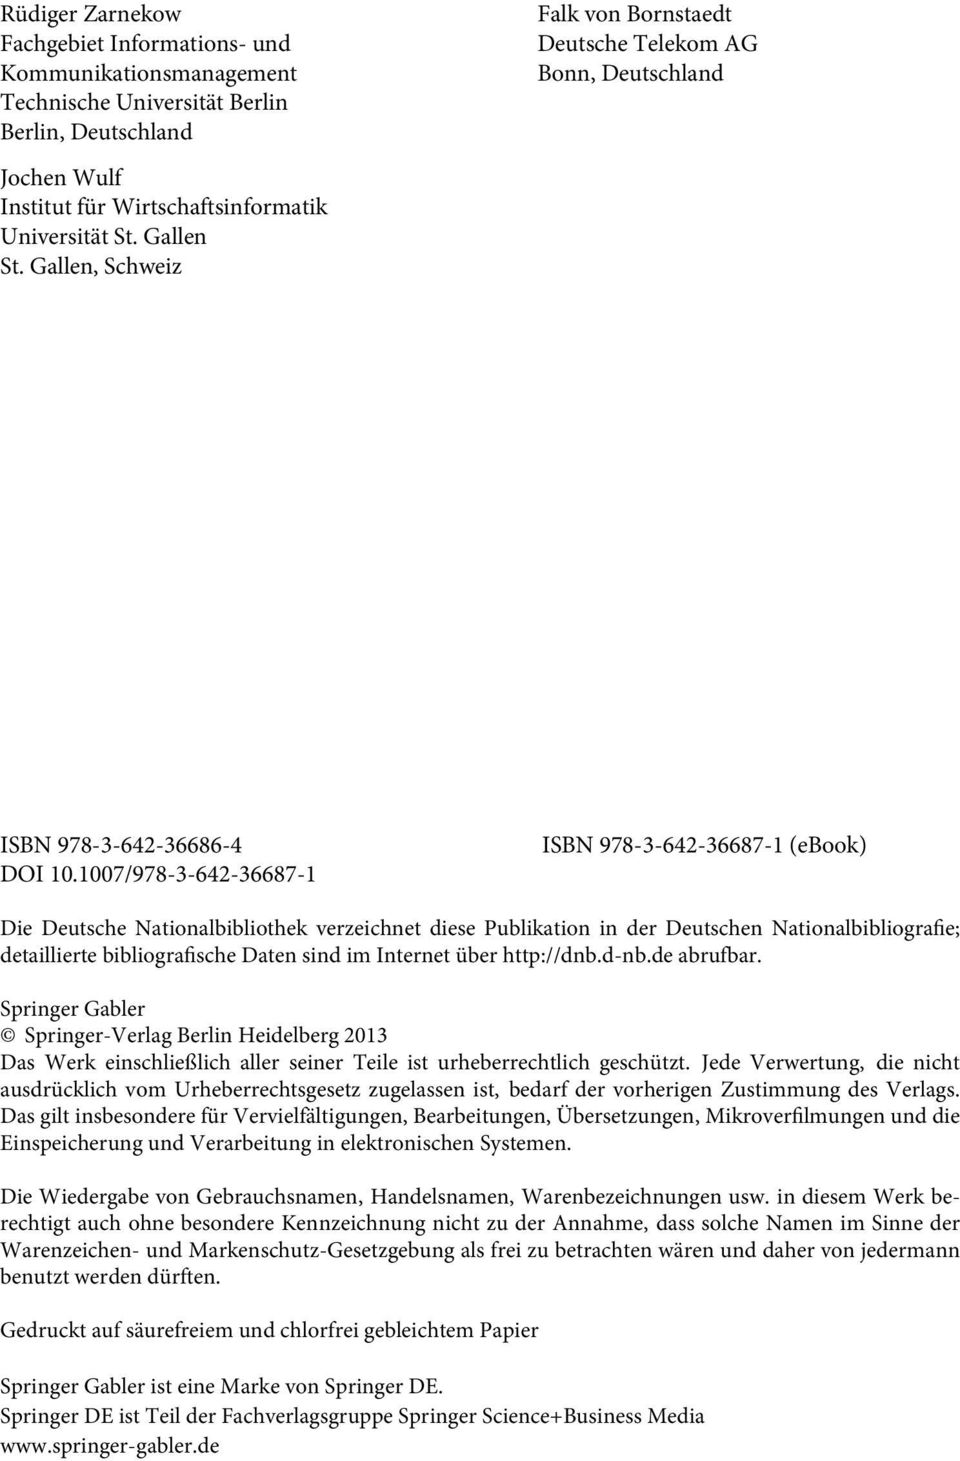 1007/978-3-642-36687-1 ISBN 978-3-642-36687-1 (ebook) Die Deutsche Nationalbibliothek verzeichnet diese Publikation in der Deutschen Nationalbibliografie; detaillierte bibliografische Daten sind im